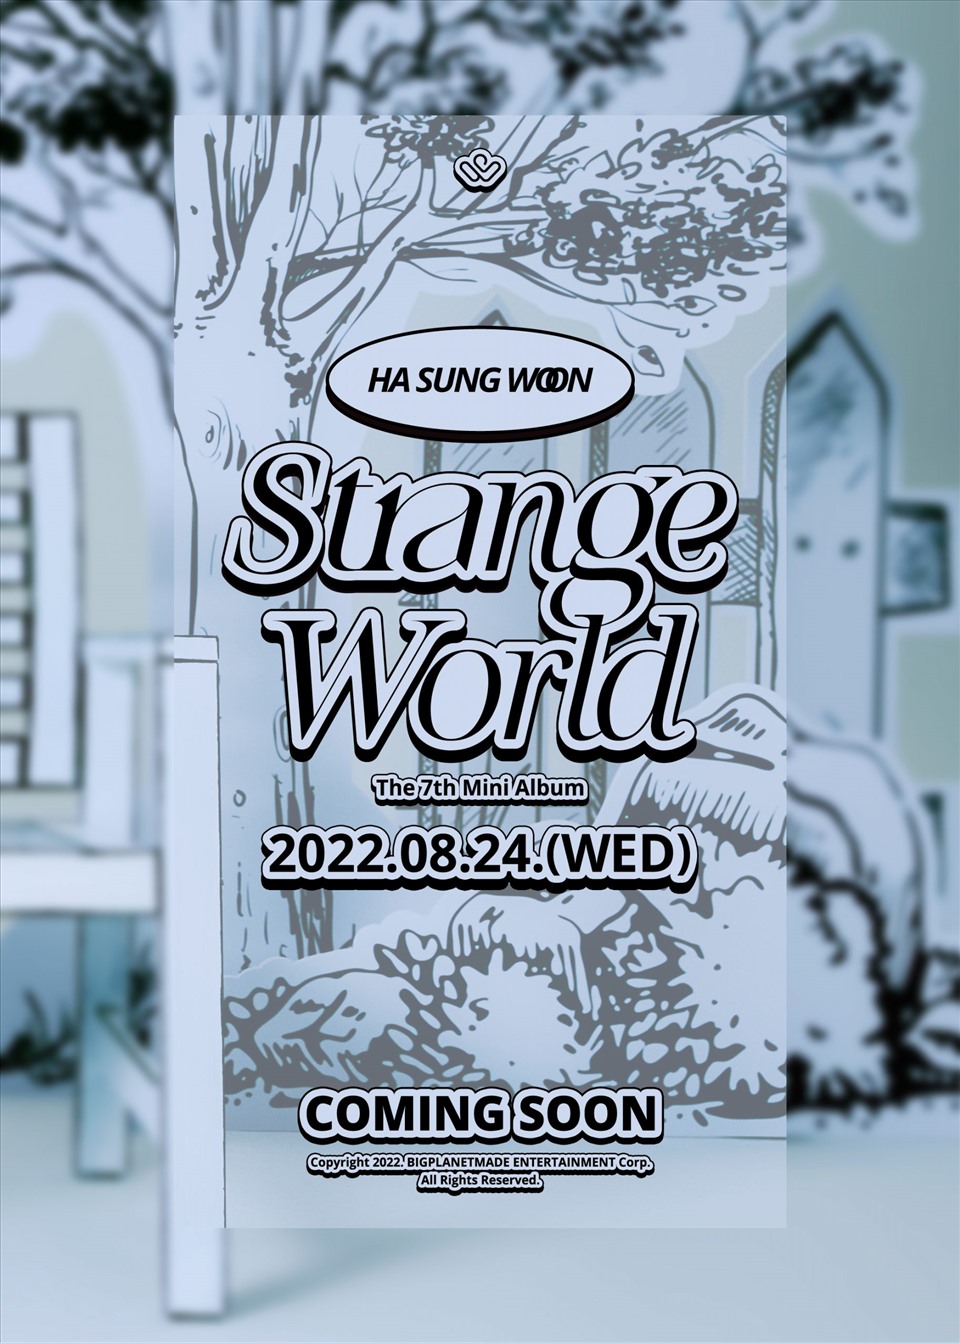 Teaser cho mini album “Strange World” của nam idol Kpop Ha Sung Woo. Ảnh: SOOMPI